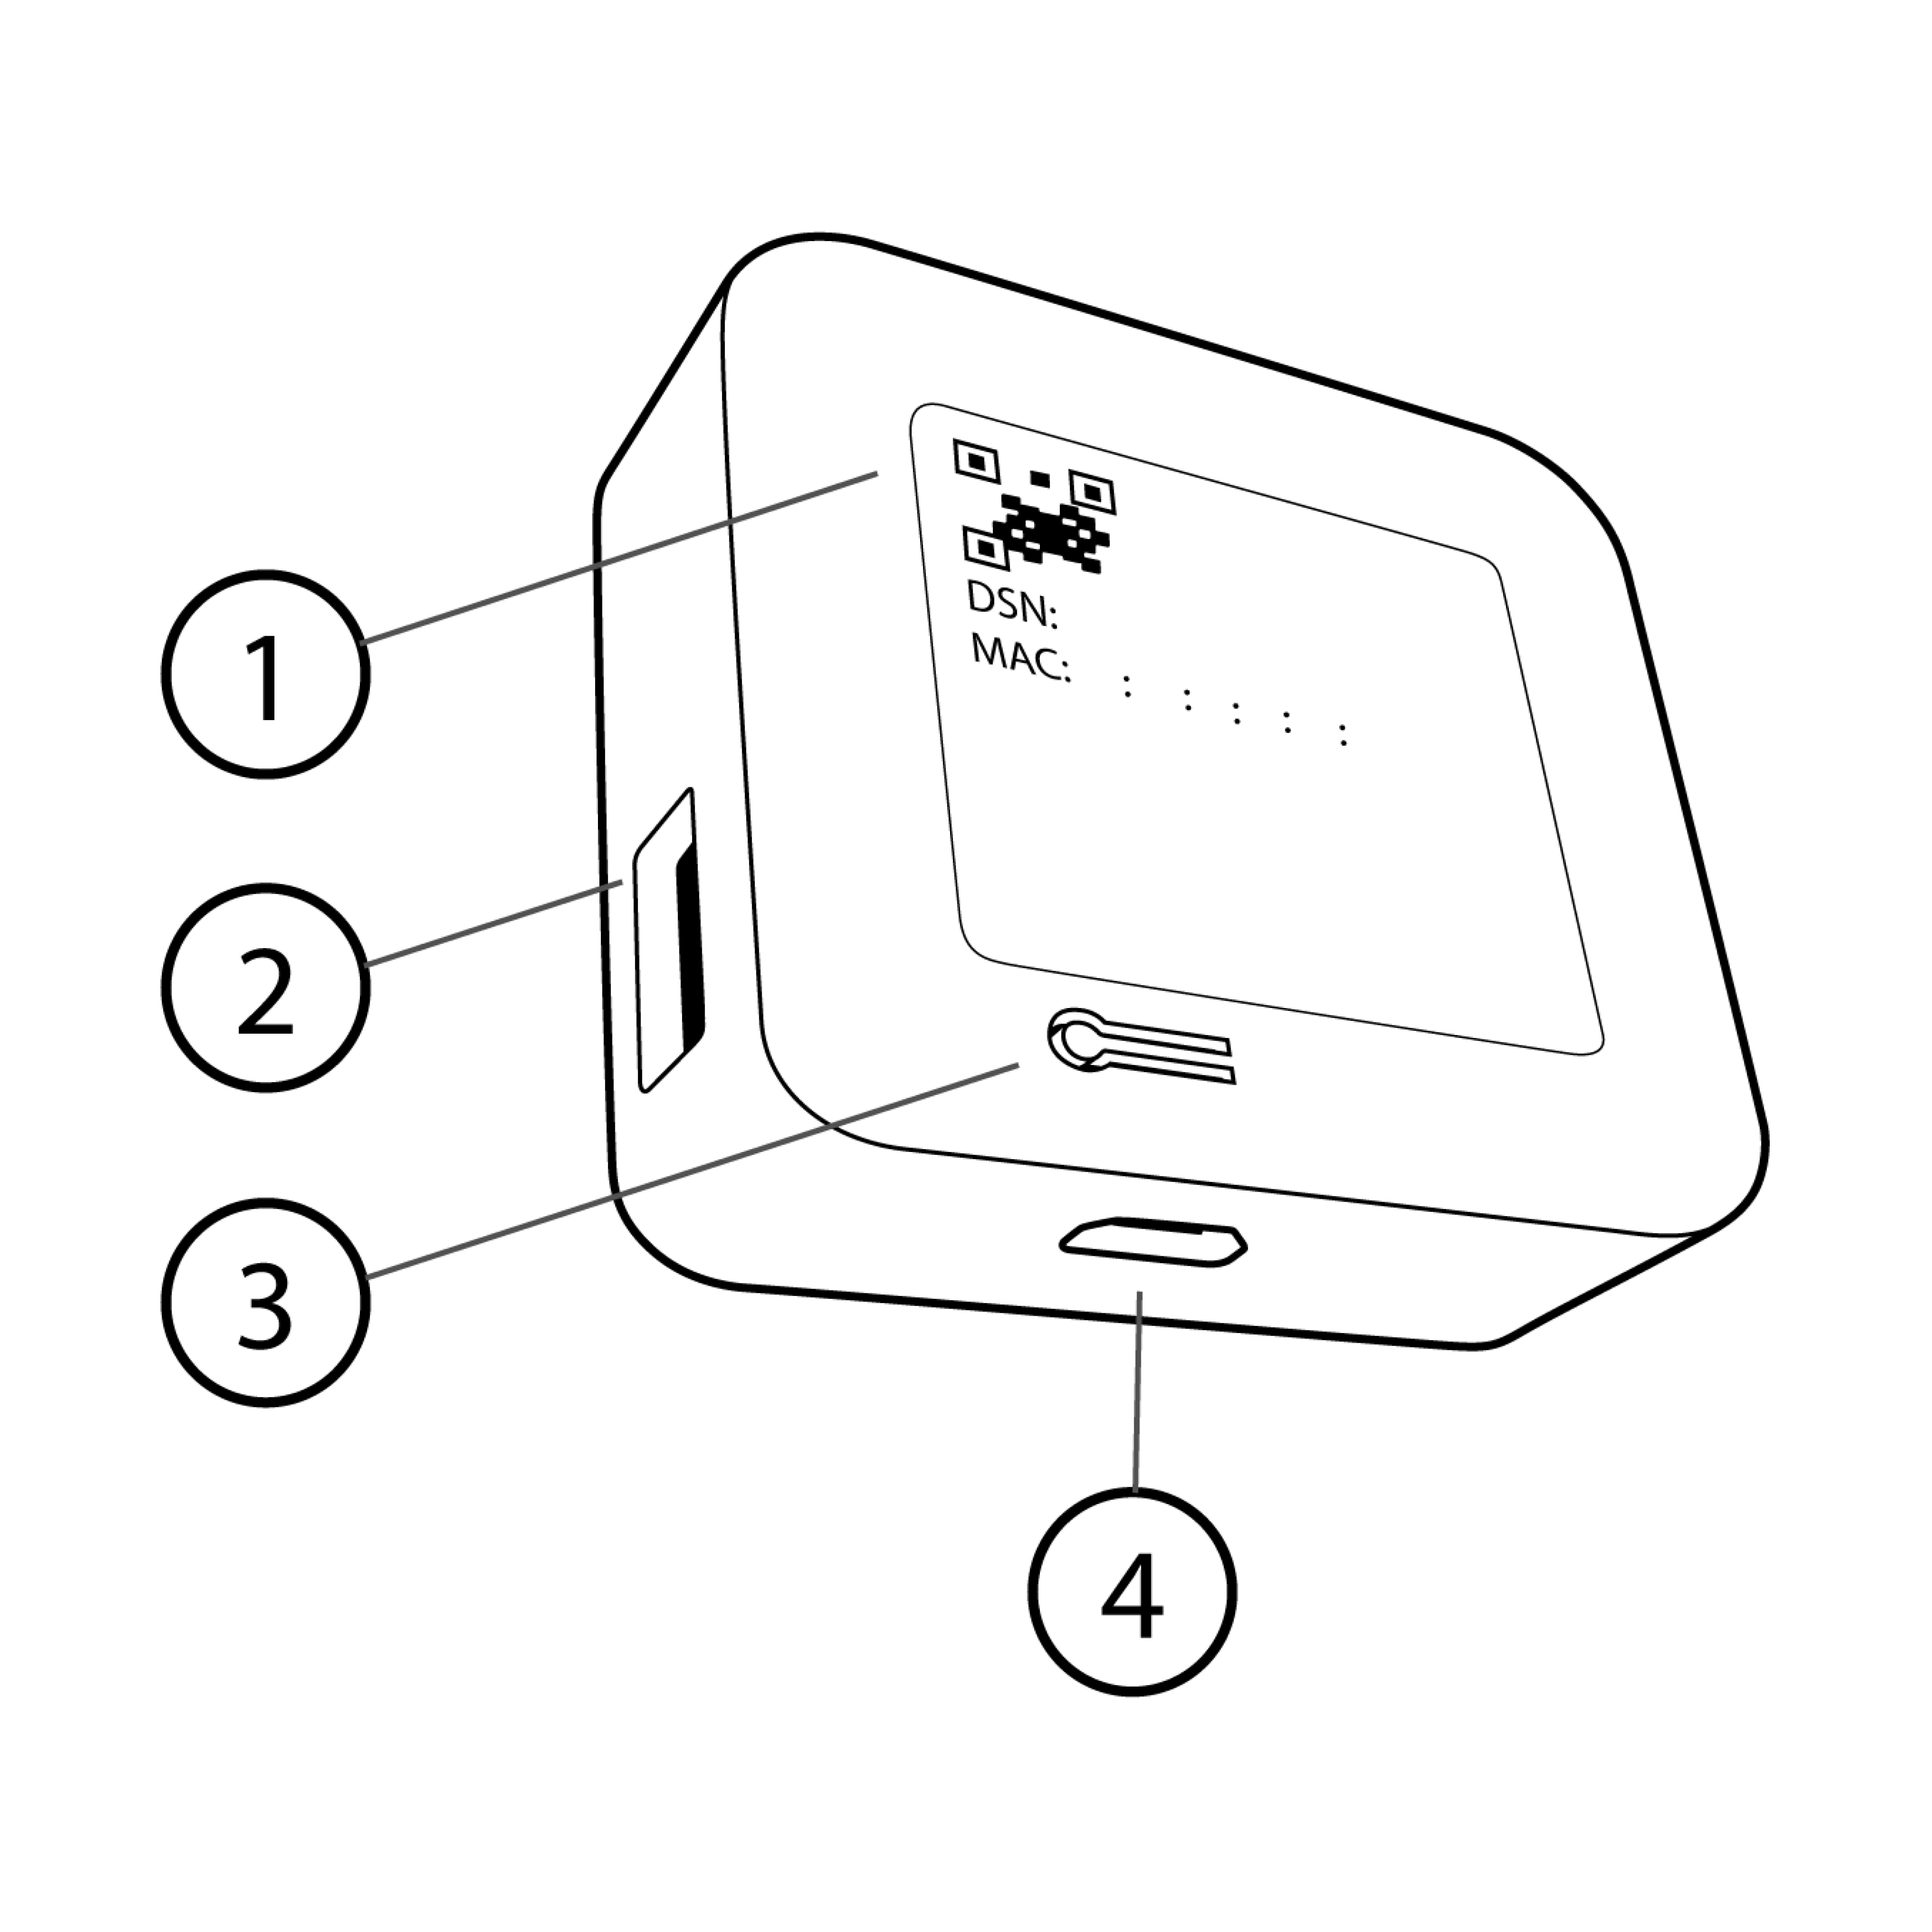 Image montrant un module de synchronisation avec des pièces numérotées, notamment un code QR, un port USB, un bouton de réinitialisation et un port d'alimentation.